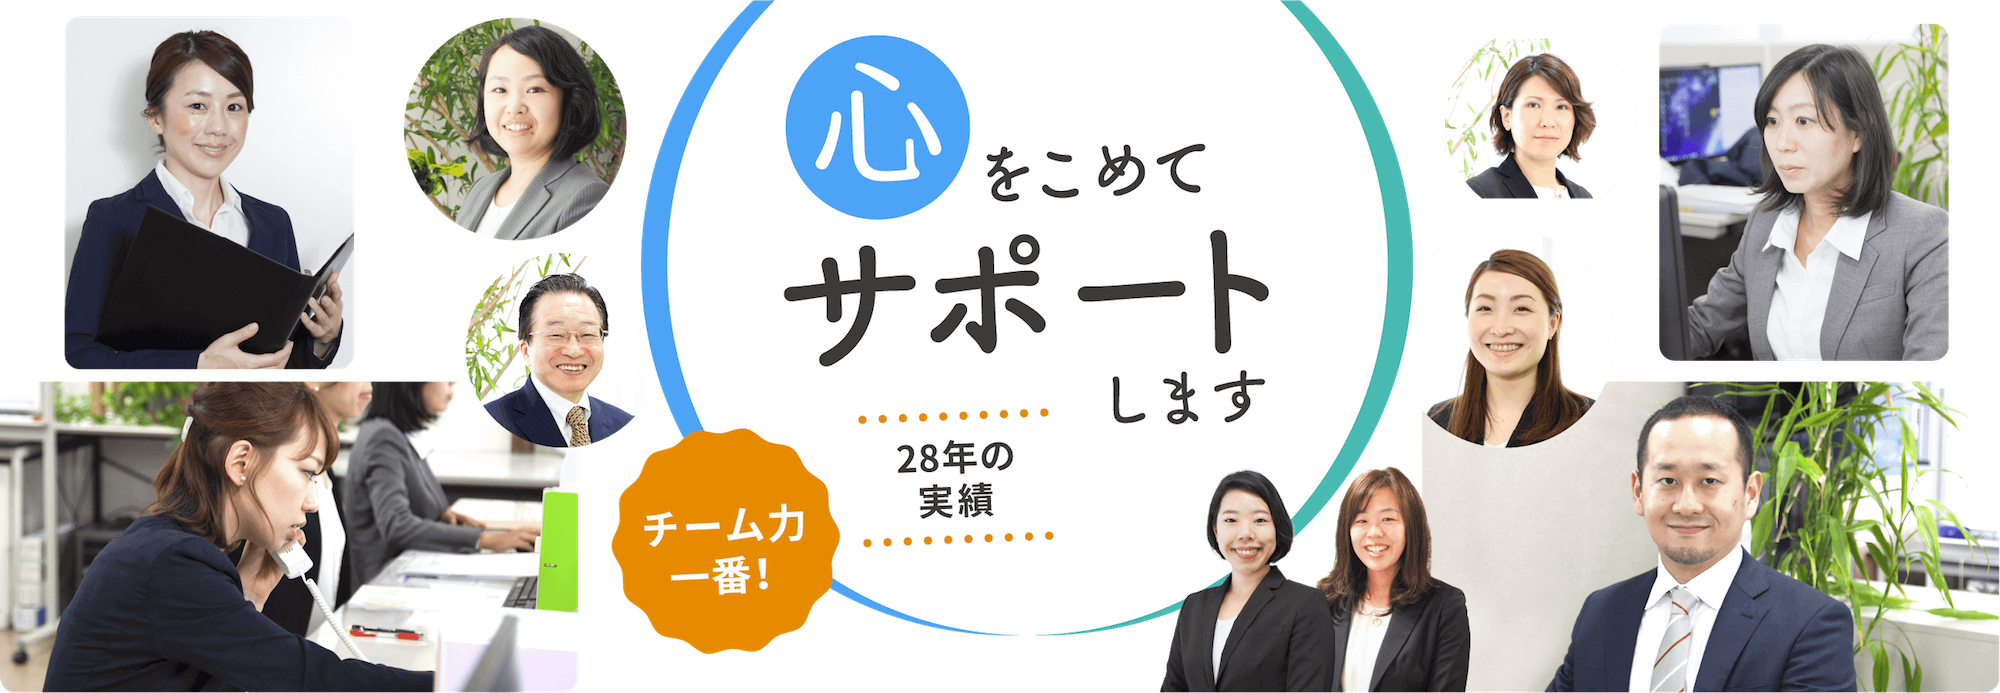 ハピネス行政書士事務所 公益法人 日本語学校 医療 学校法人 幼稚園 の設立 許認可取得